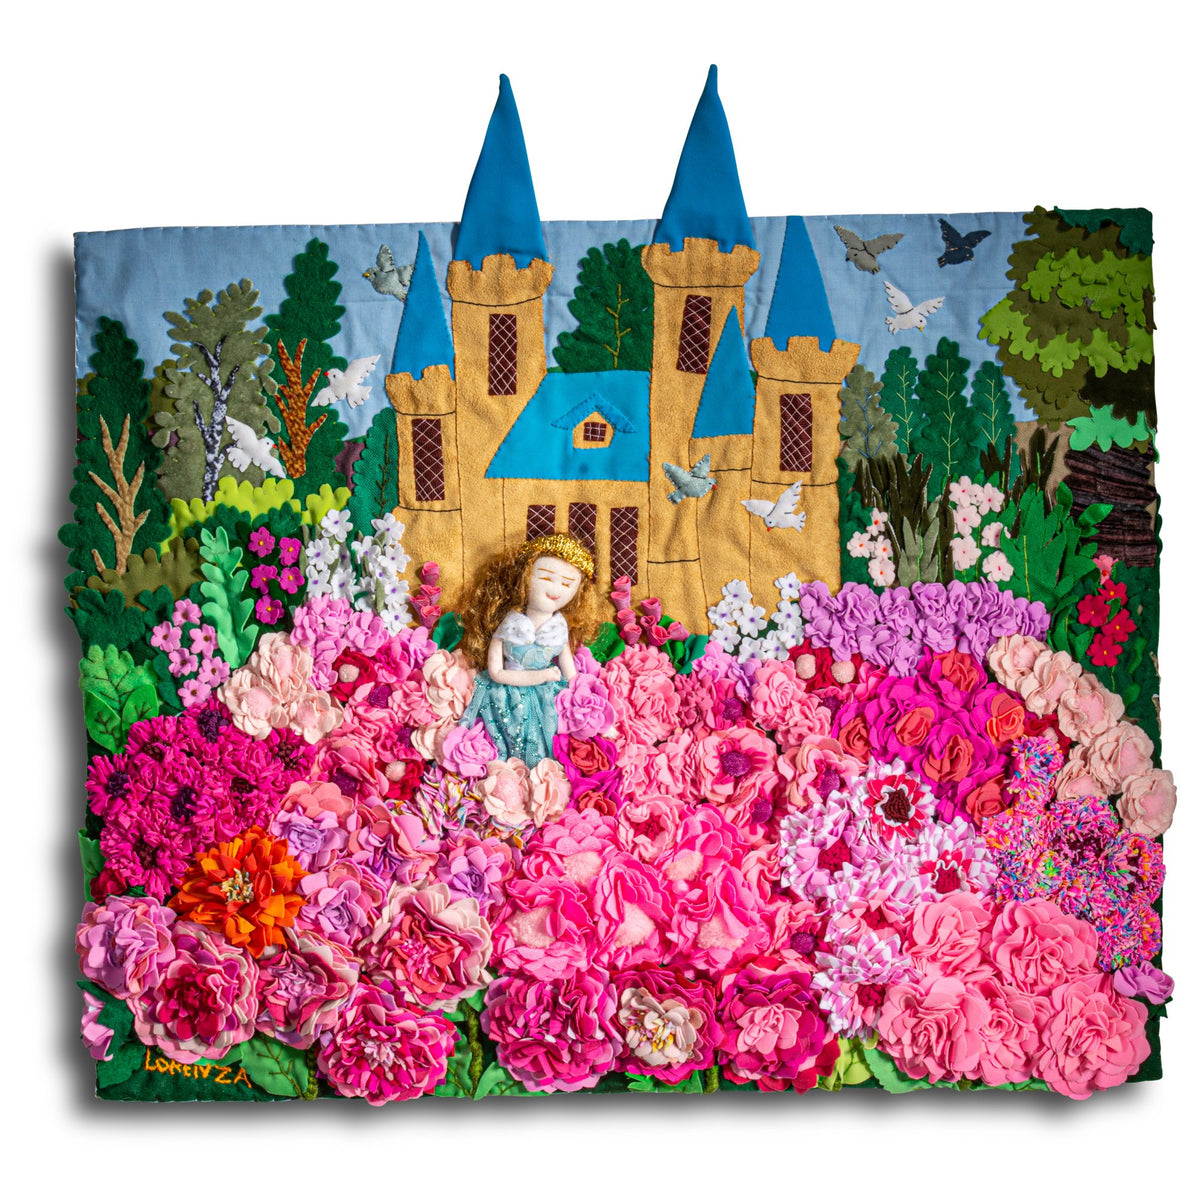 Fairy Tale Princess - Medium 3D Arpillera Art Quilt - 21" X 17"